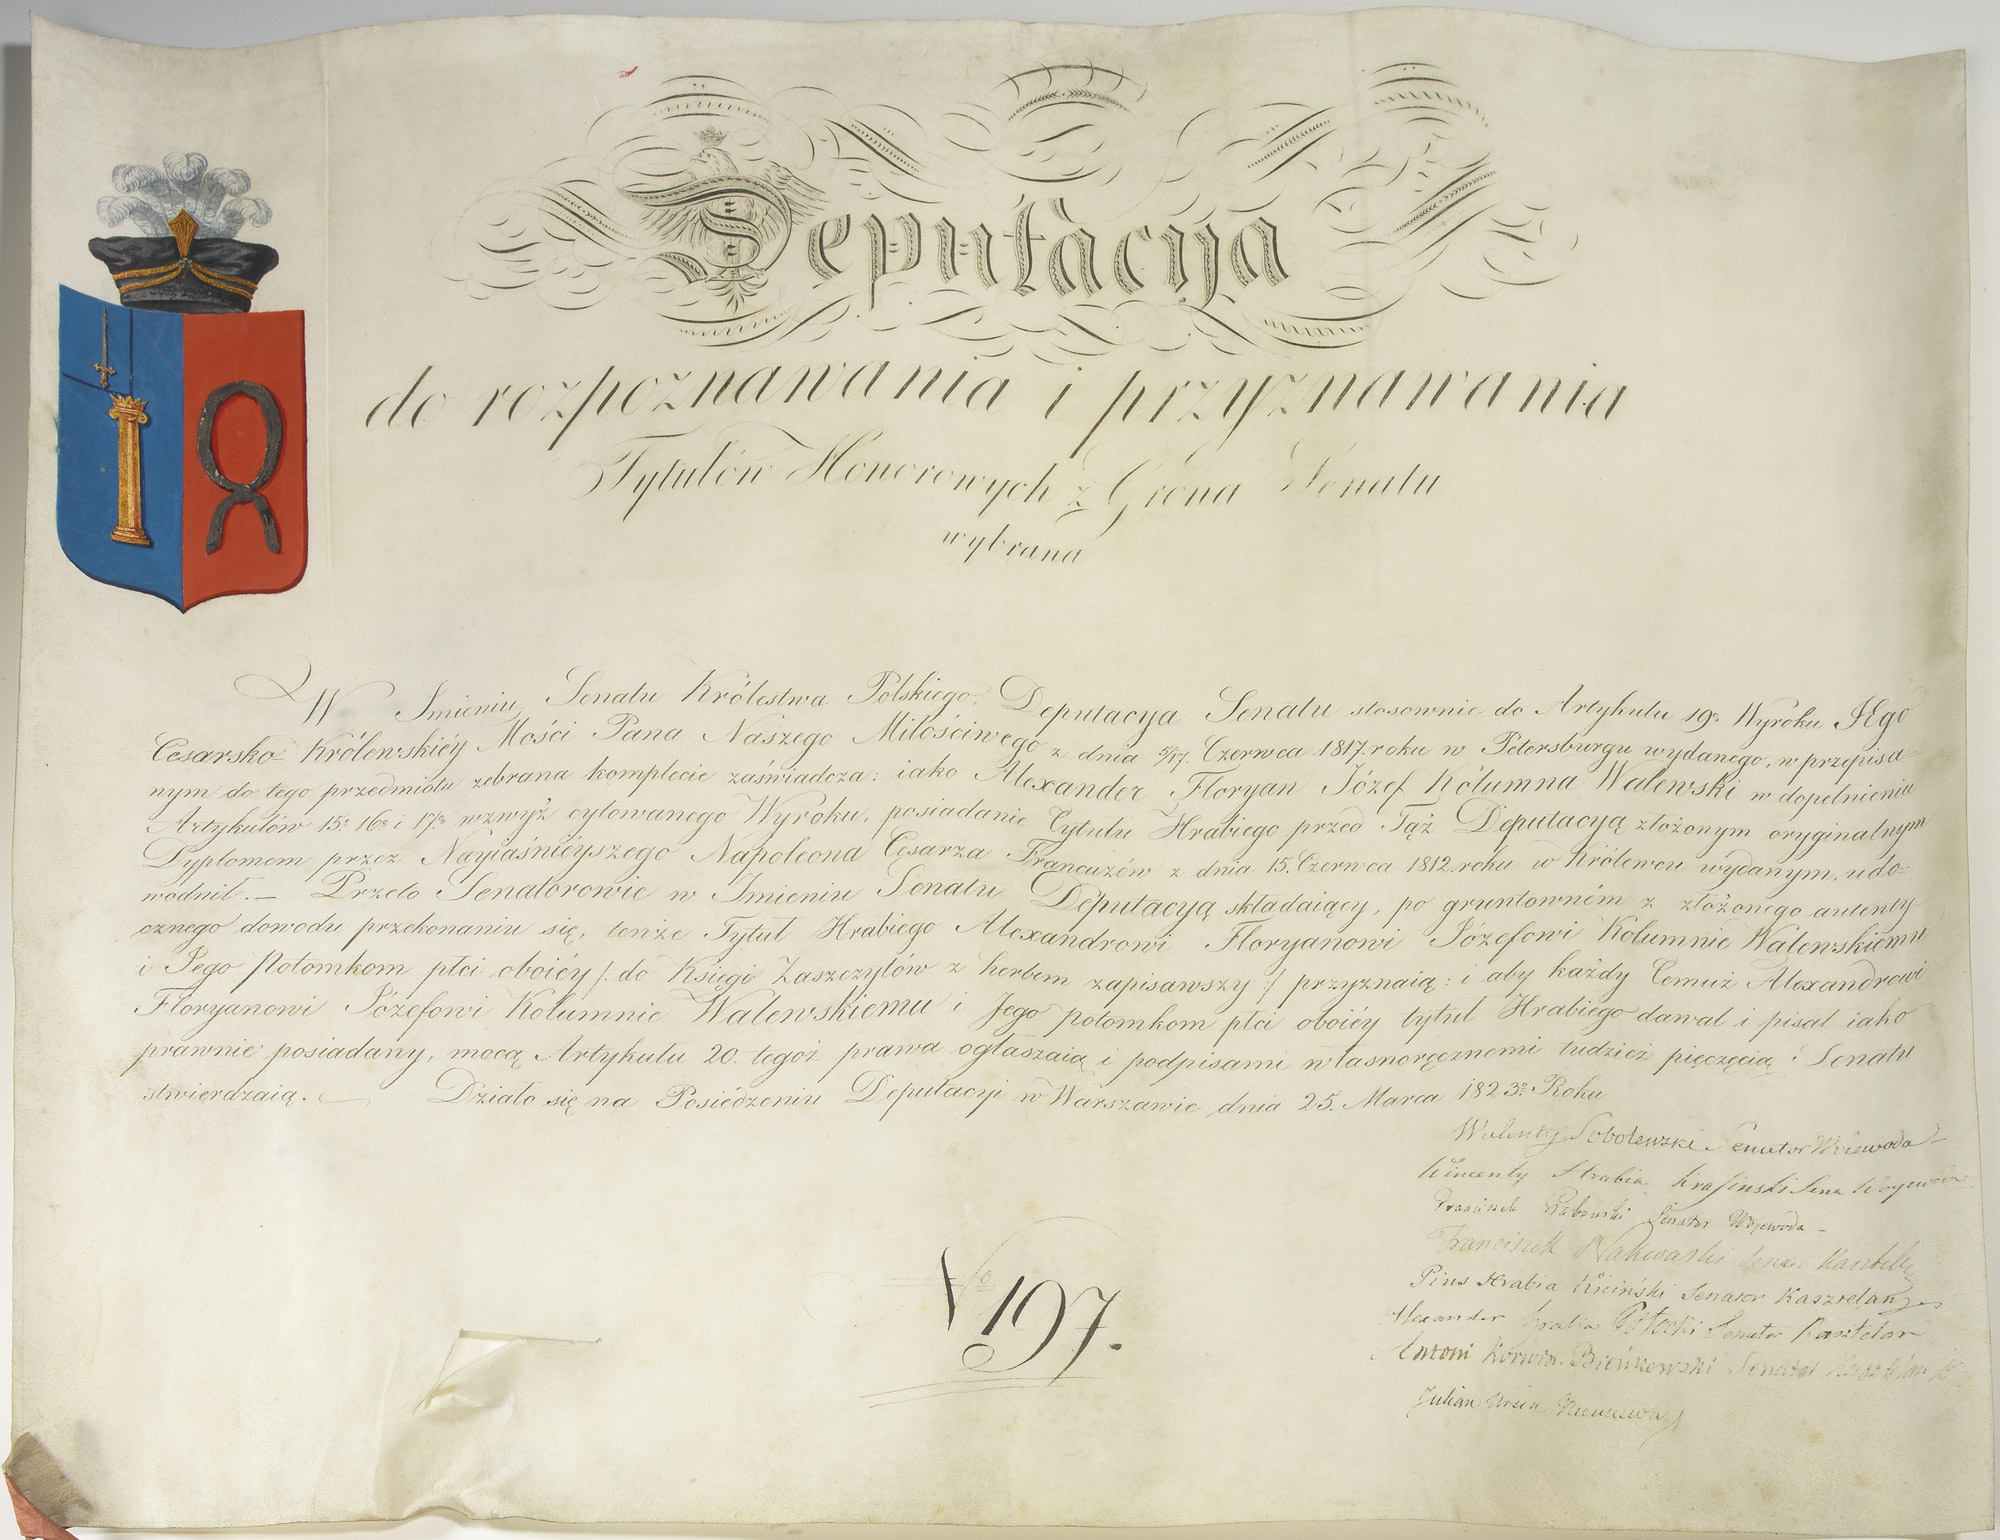 Lettres patentes polonaises - Patrimoine Charles-André COLONNA WALEWSKI, en ligne directe de Napoléon